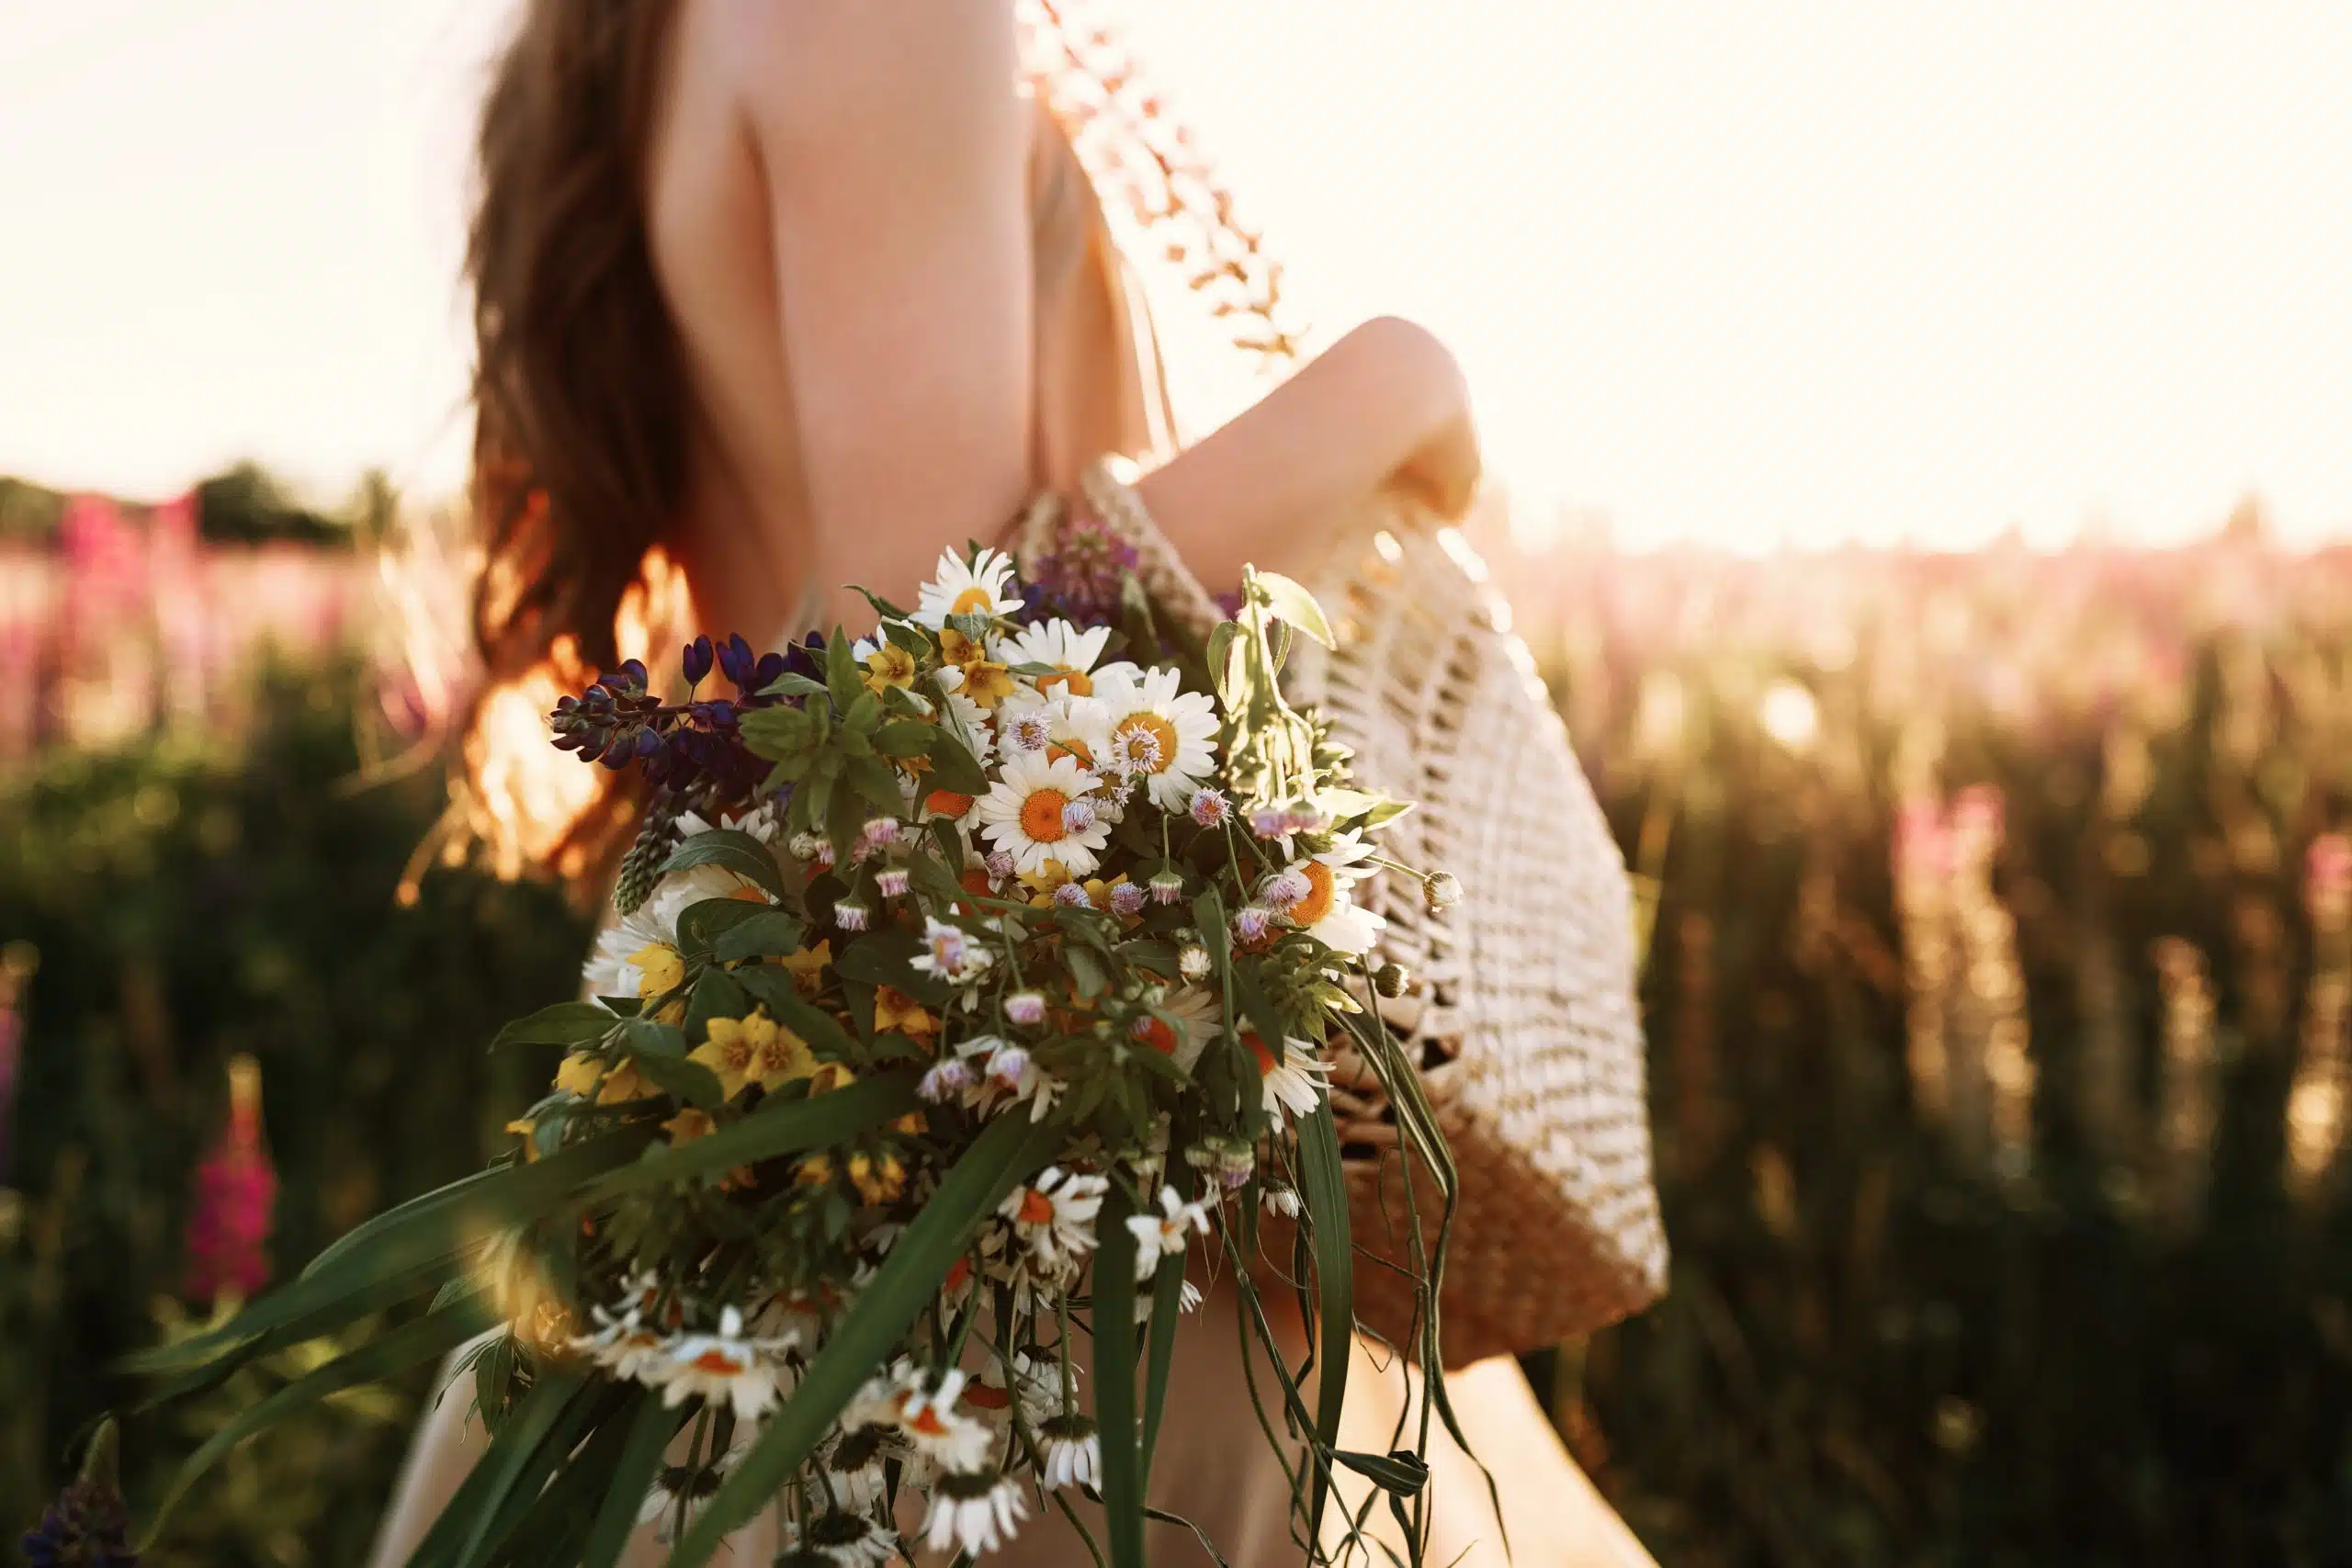 Woman holding wildflowers bouquet in straw bag, walking in flower field on sunset.